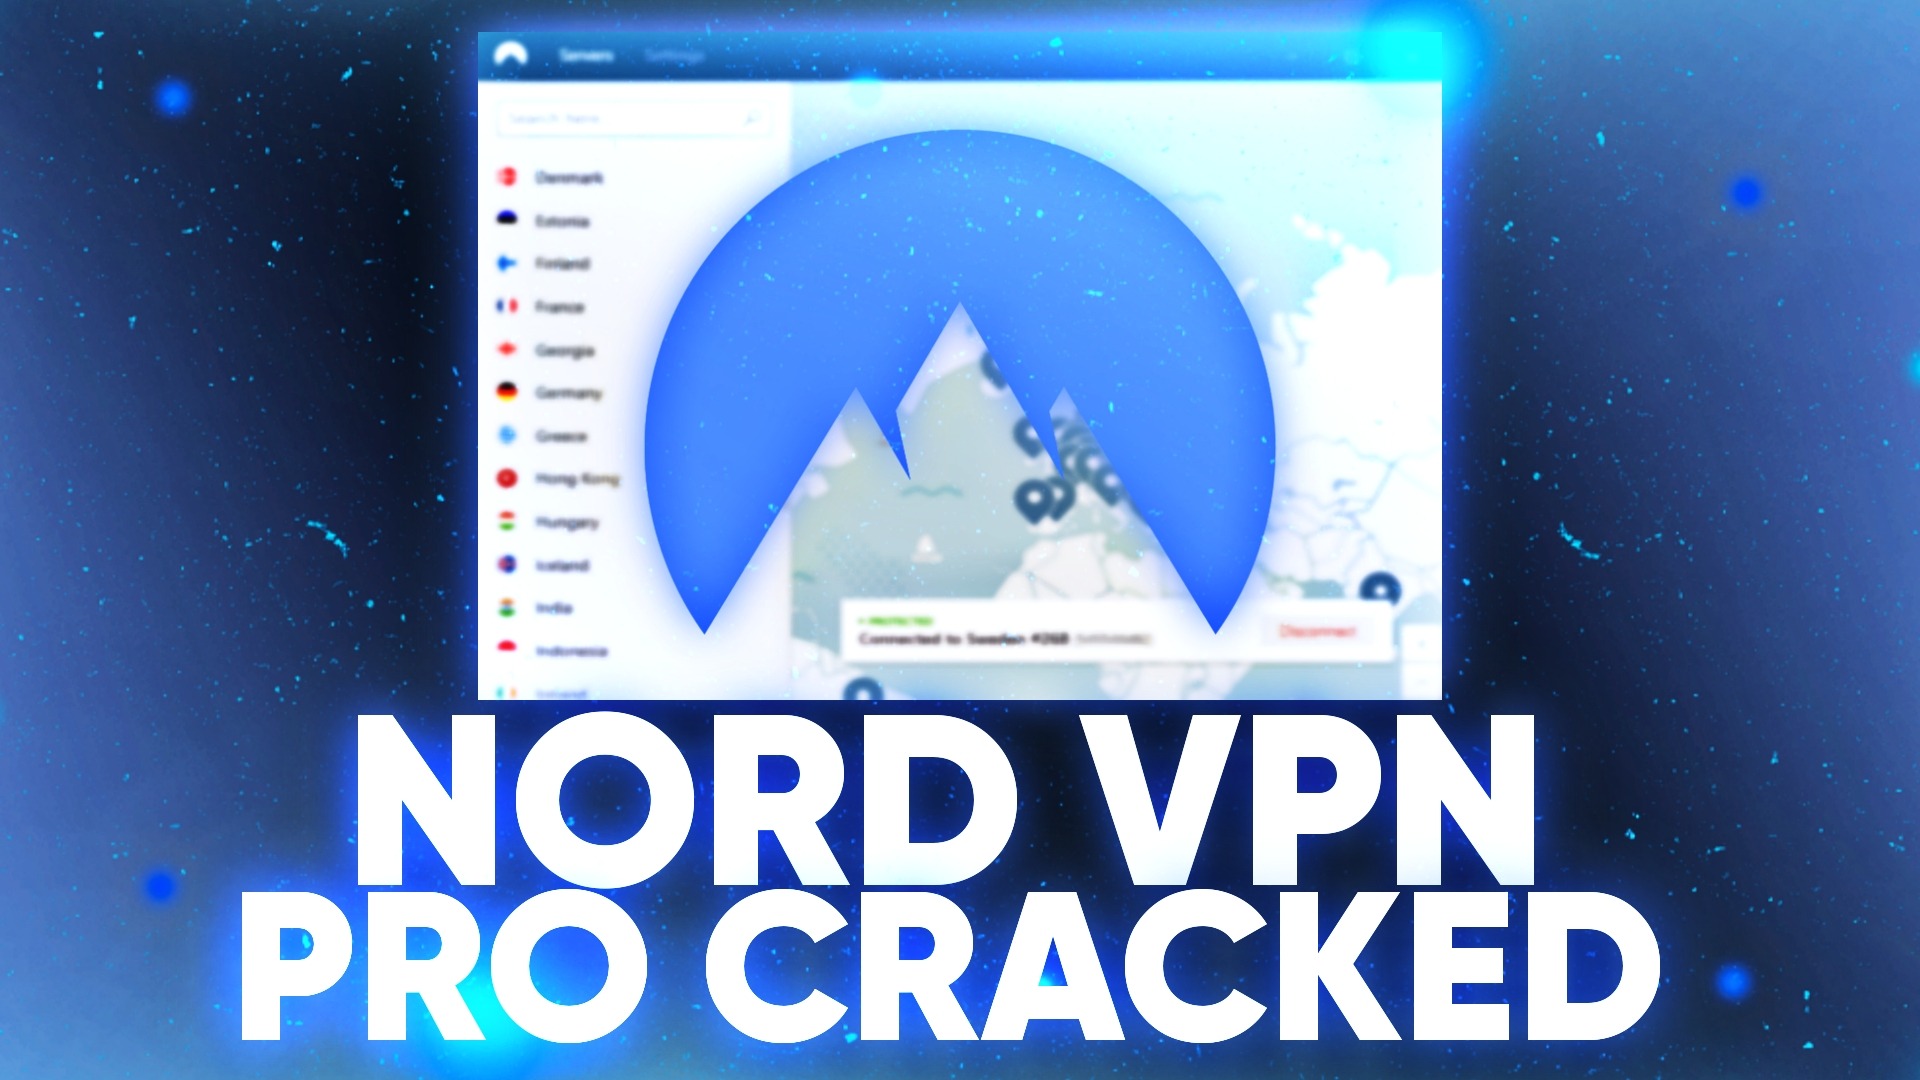 download nordvpn cracked